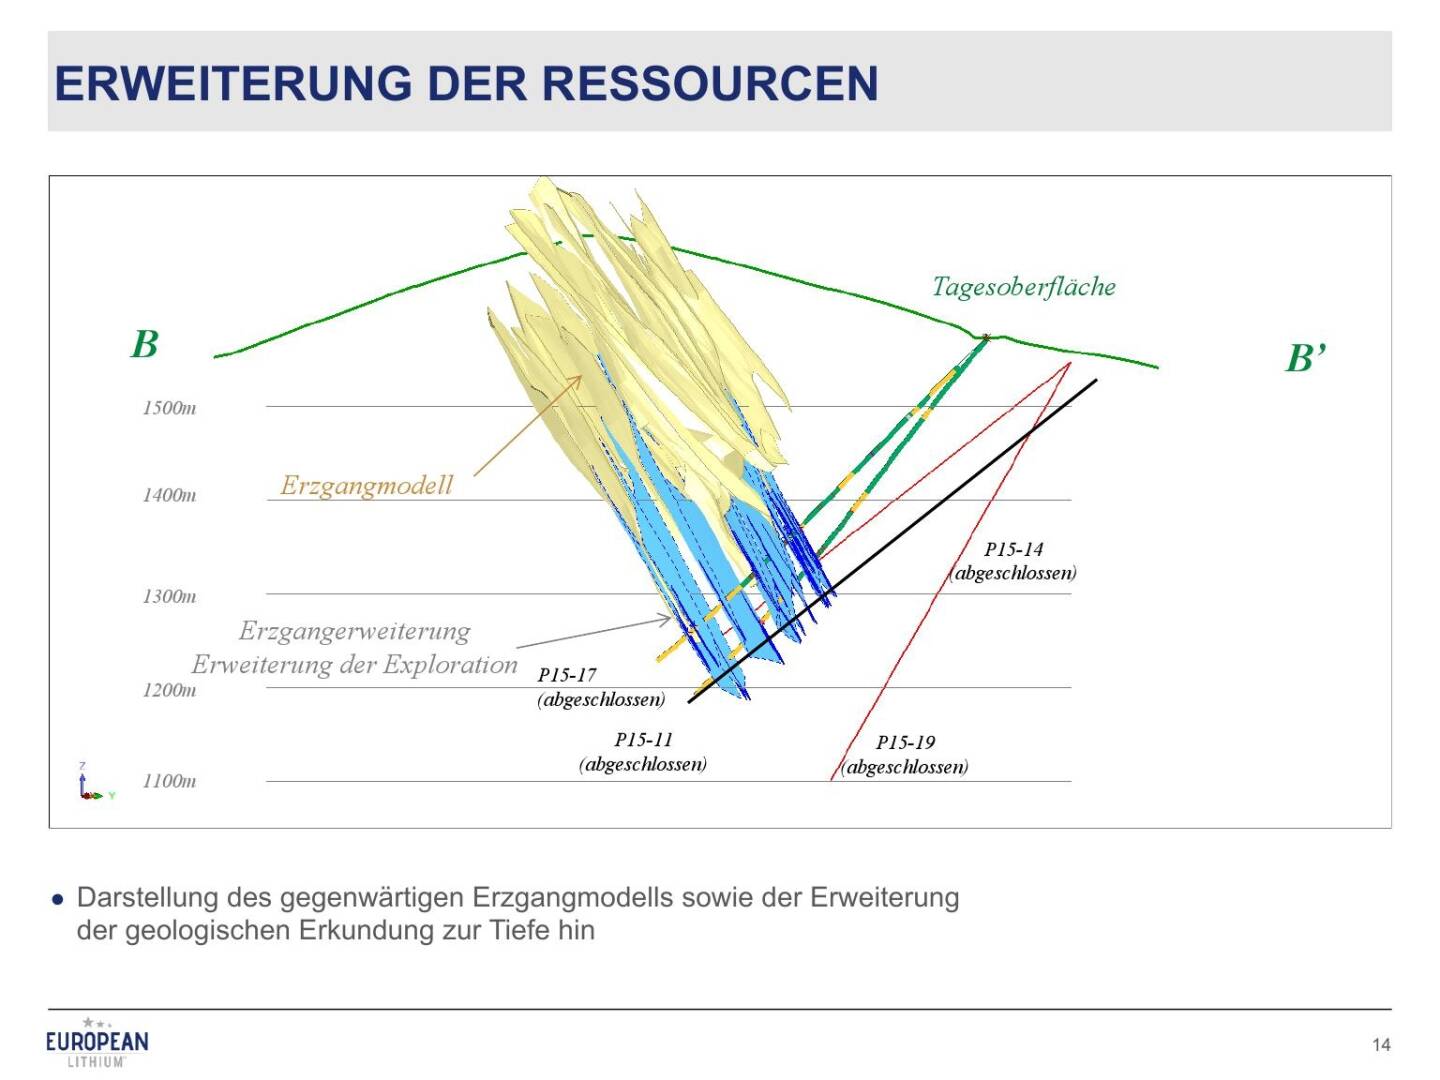 Präsentation European Lithium - Erweiterung der Ressourcen